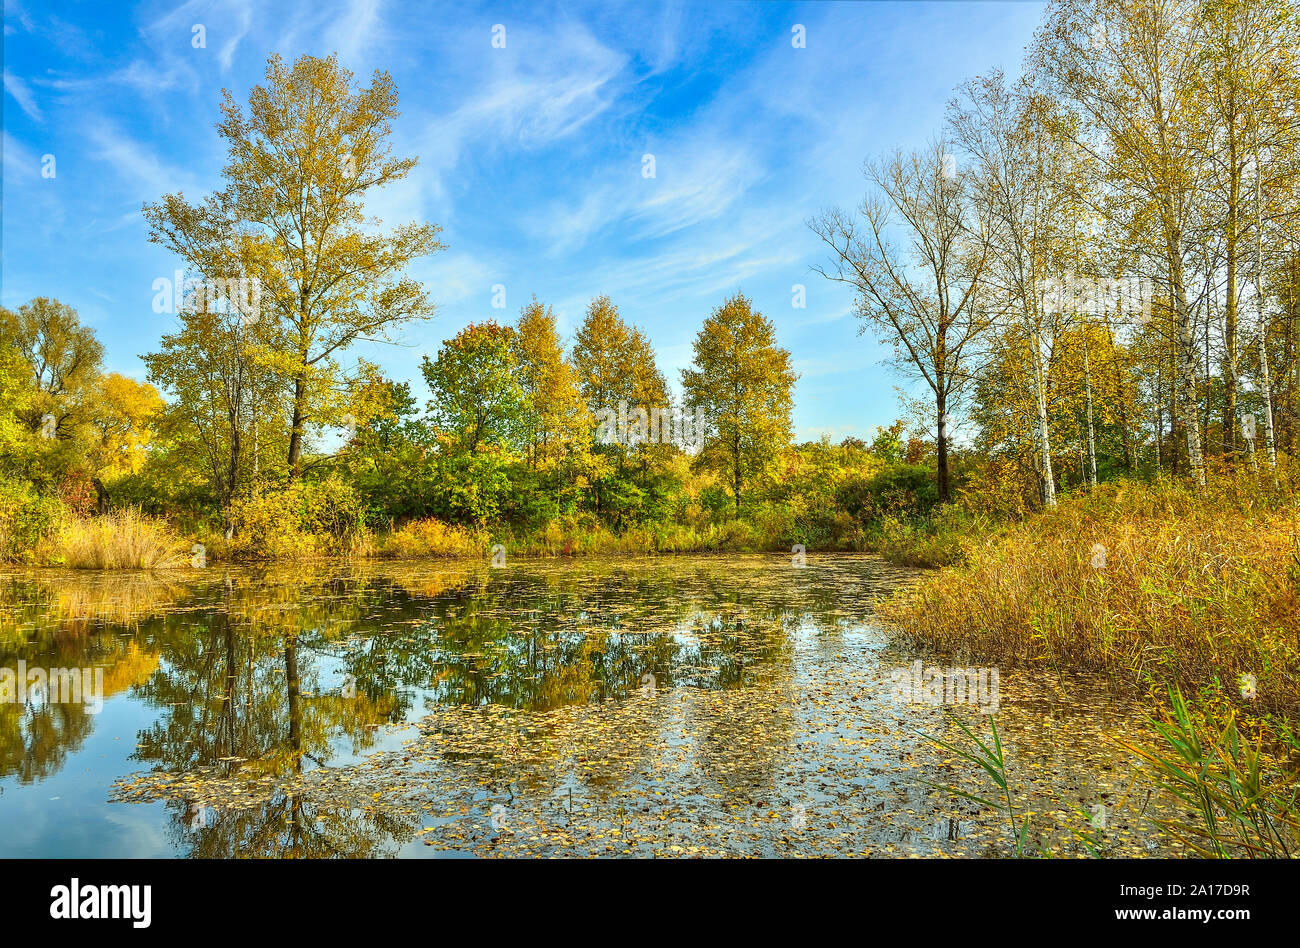 Goldener Herbst am Ufer des See. Helle Herbst Blätter der Birken in ruhigem Wasser schwimmen. Gelbe Bäume, Gras und blauer Himmel im Wasser spiegelt Stockfoto